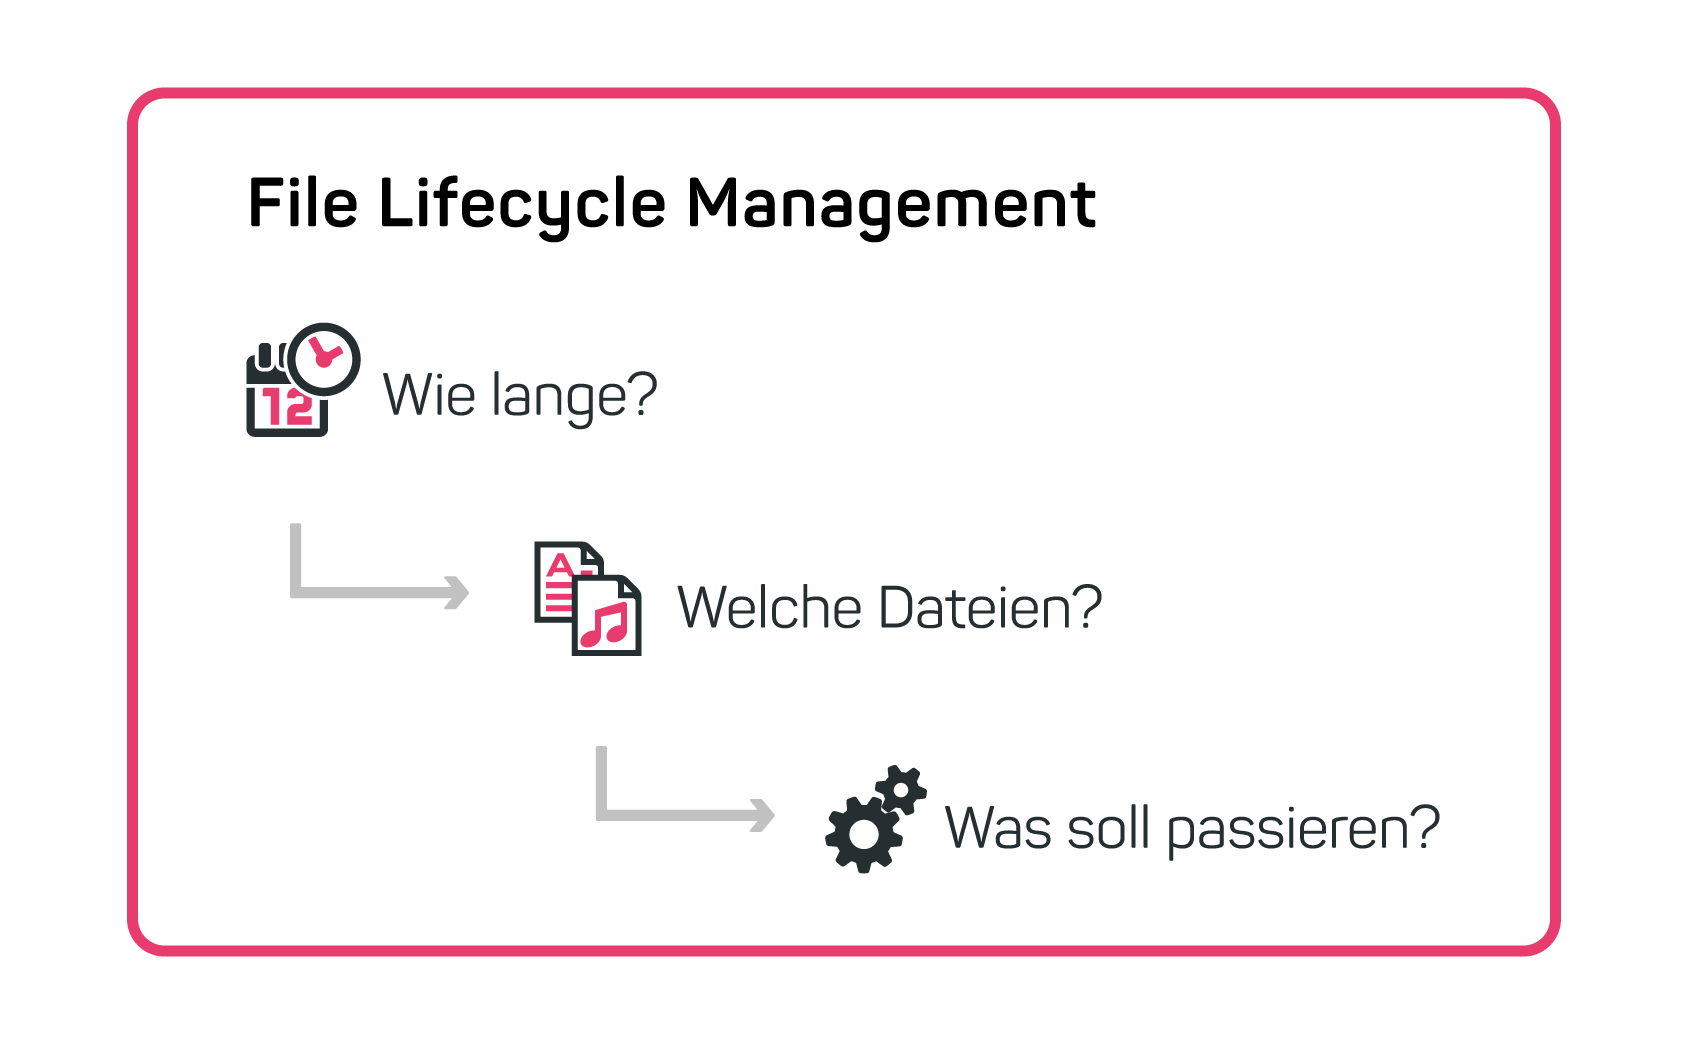 Konzept von File Lifecycle Management erklärt